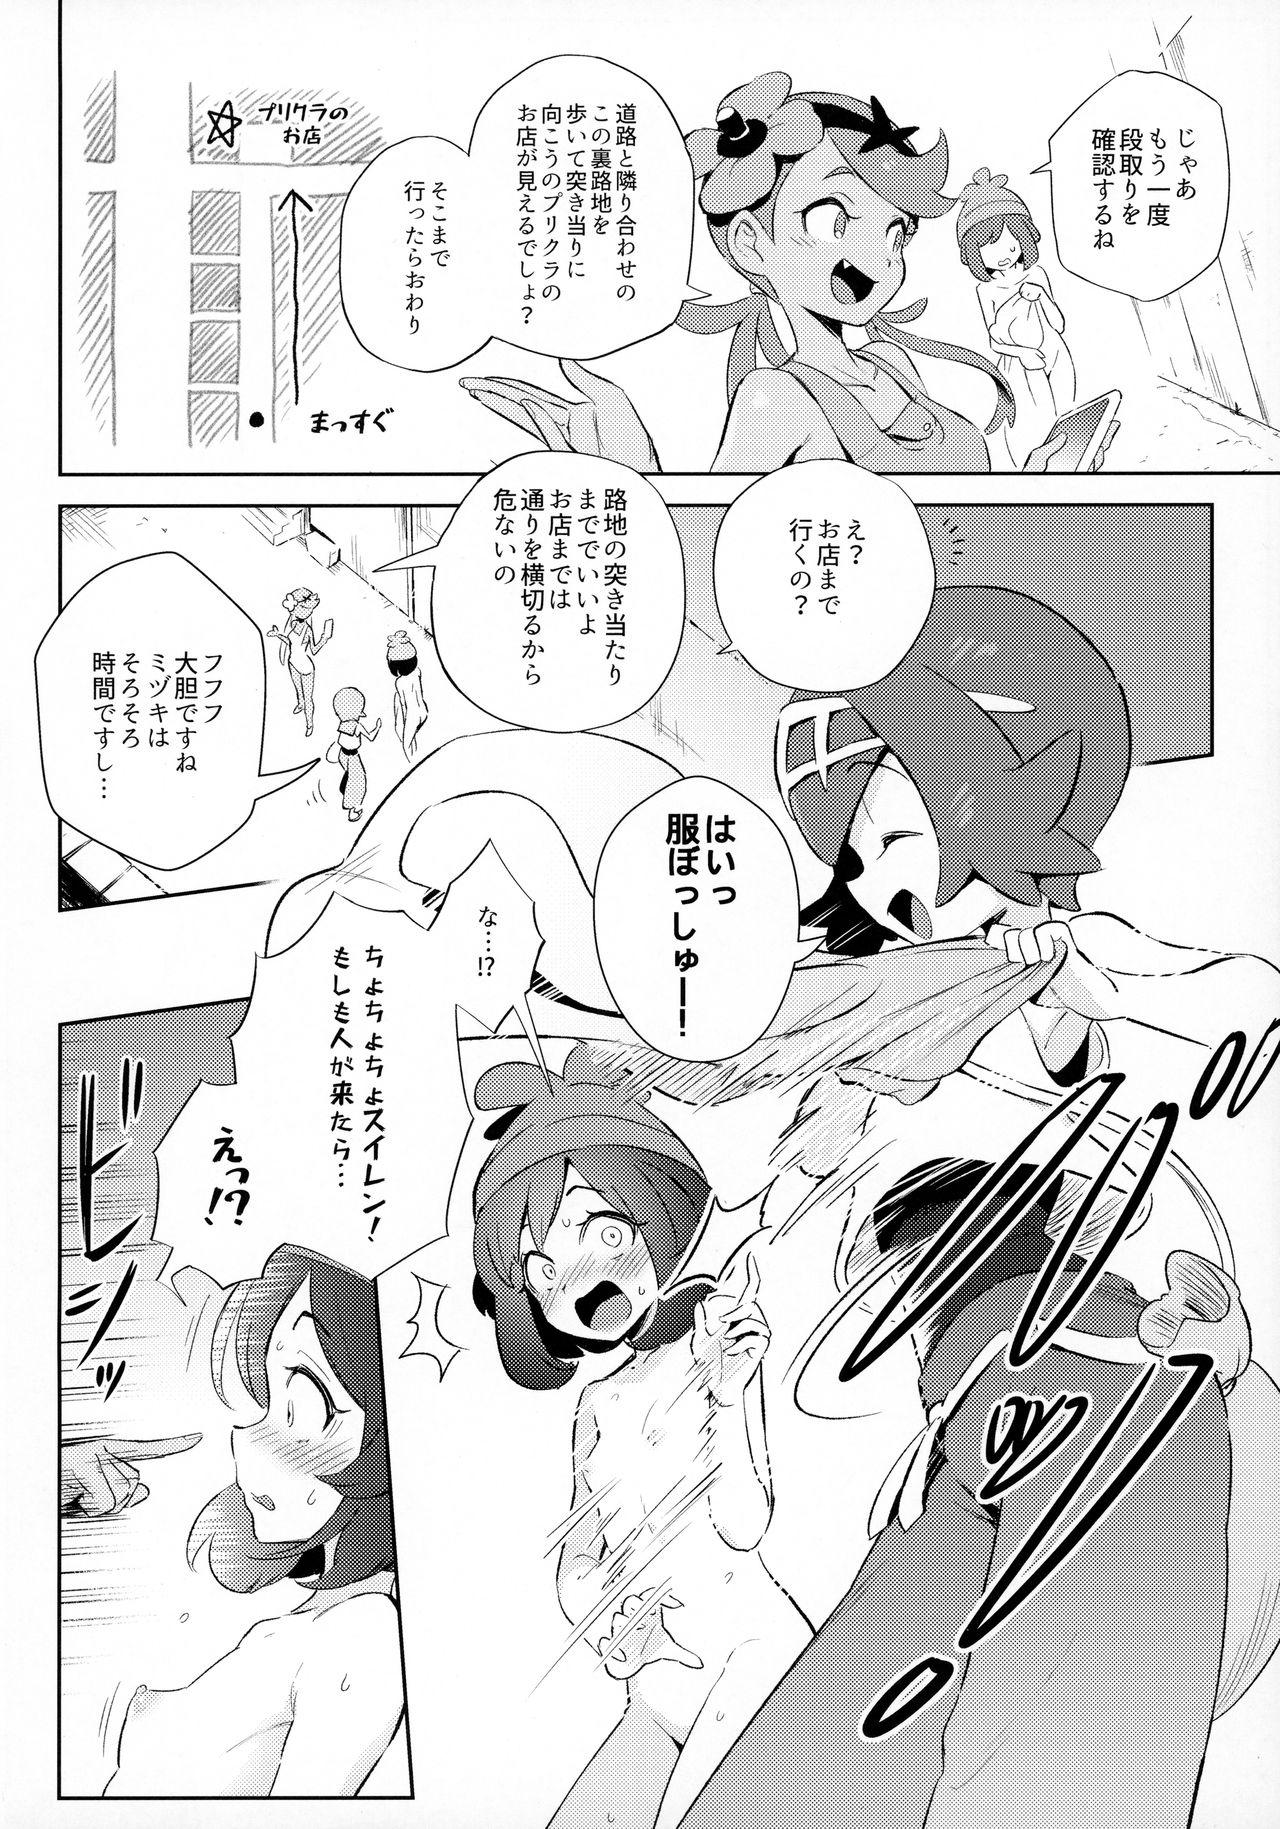 Bangbros Onnanoko-tachi no Himitsu no Bouken - Pokemon | pocket monsters Italiana - Page 6